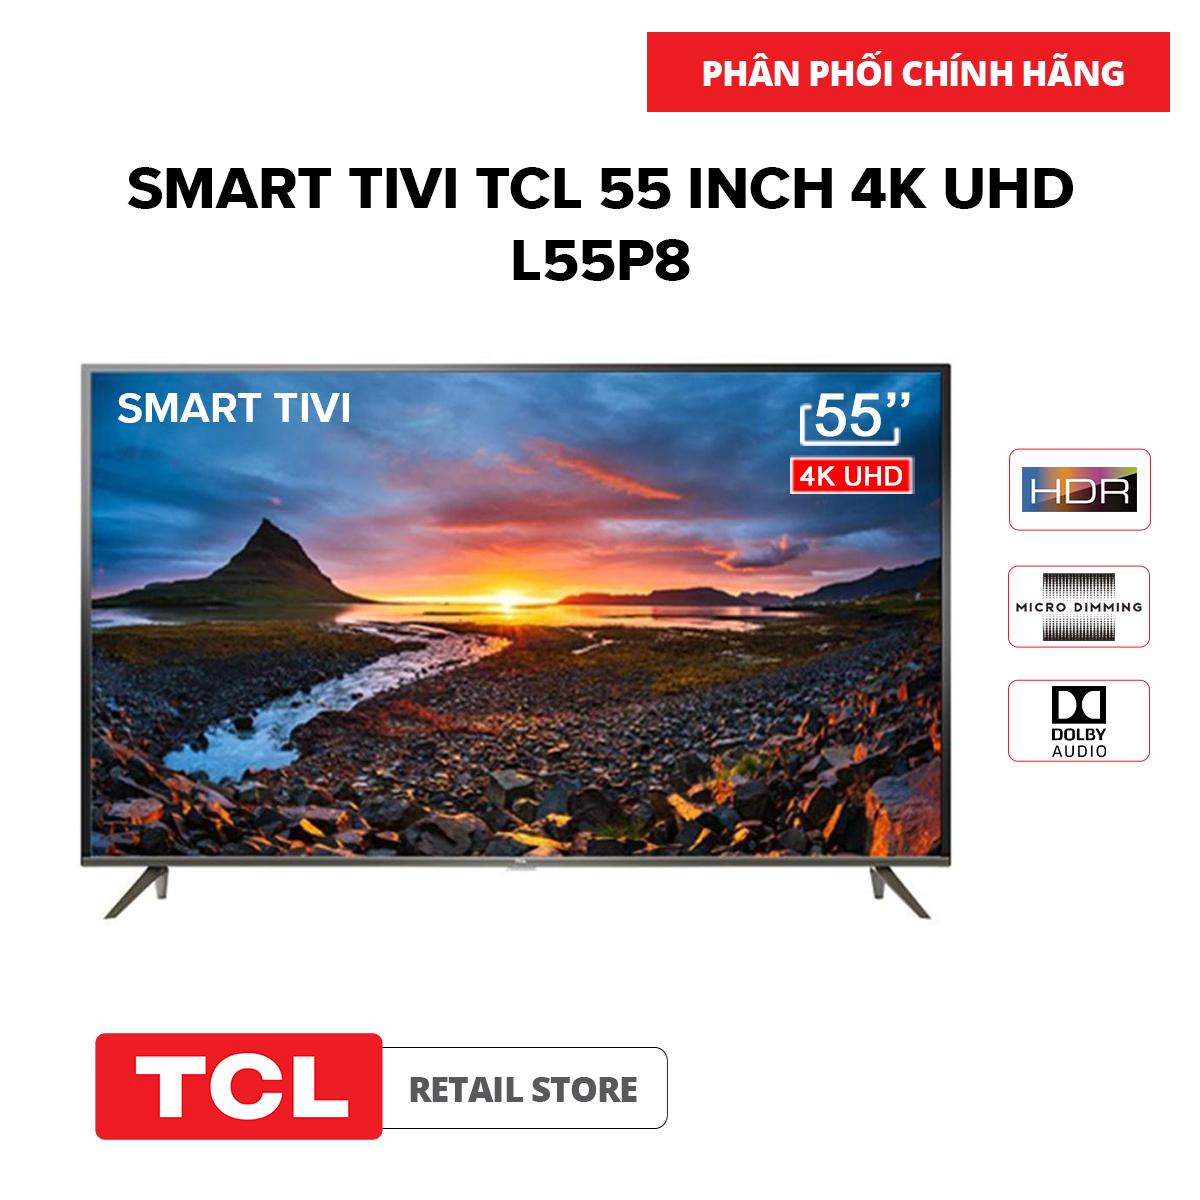 Smart Tivi TCL 55 inch 4K UHD L55P8 - Công nghệ dải màu rộng giúp tăng cường khả năng hiển...